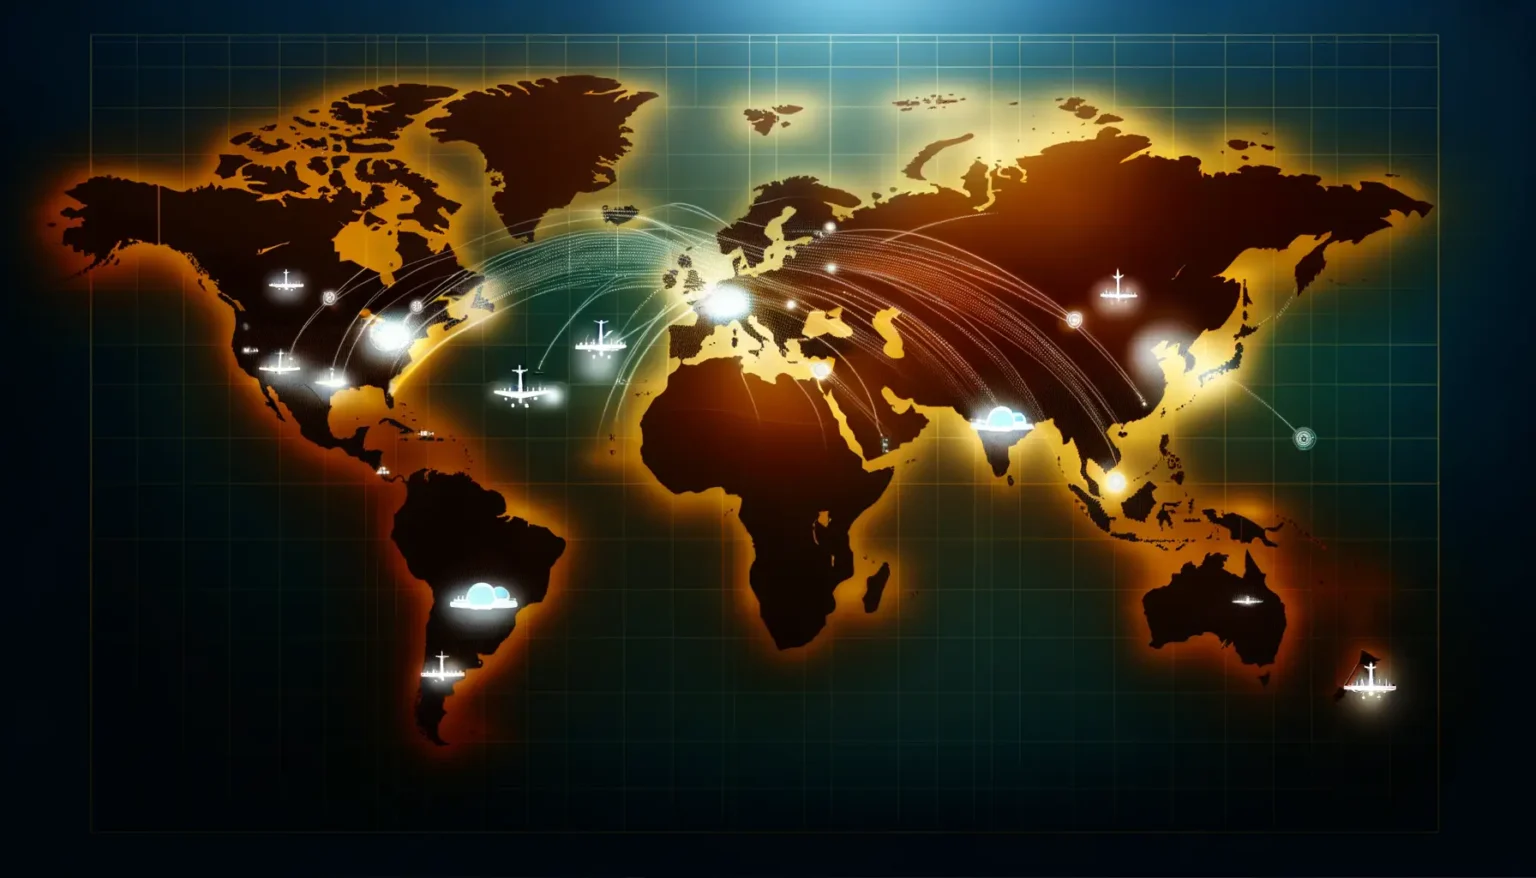 Stilisierte Weltkarte in Dunkelorange- und Brauntönen mit Leuchtlinien, die Verbindungen zwischen verschiedenen Punkten darstellen, und Symbolen für Transportmittel wie Flugzeuge und Schiffe, die für globale Vernetzung und Reiseaktivitäten stehen.